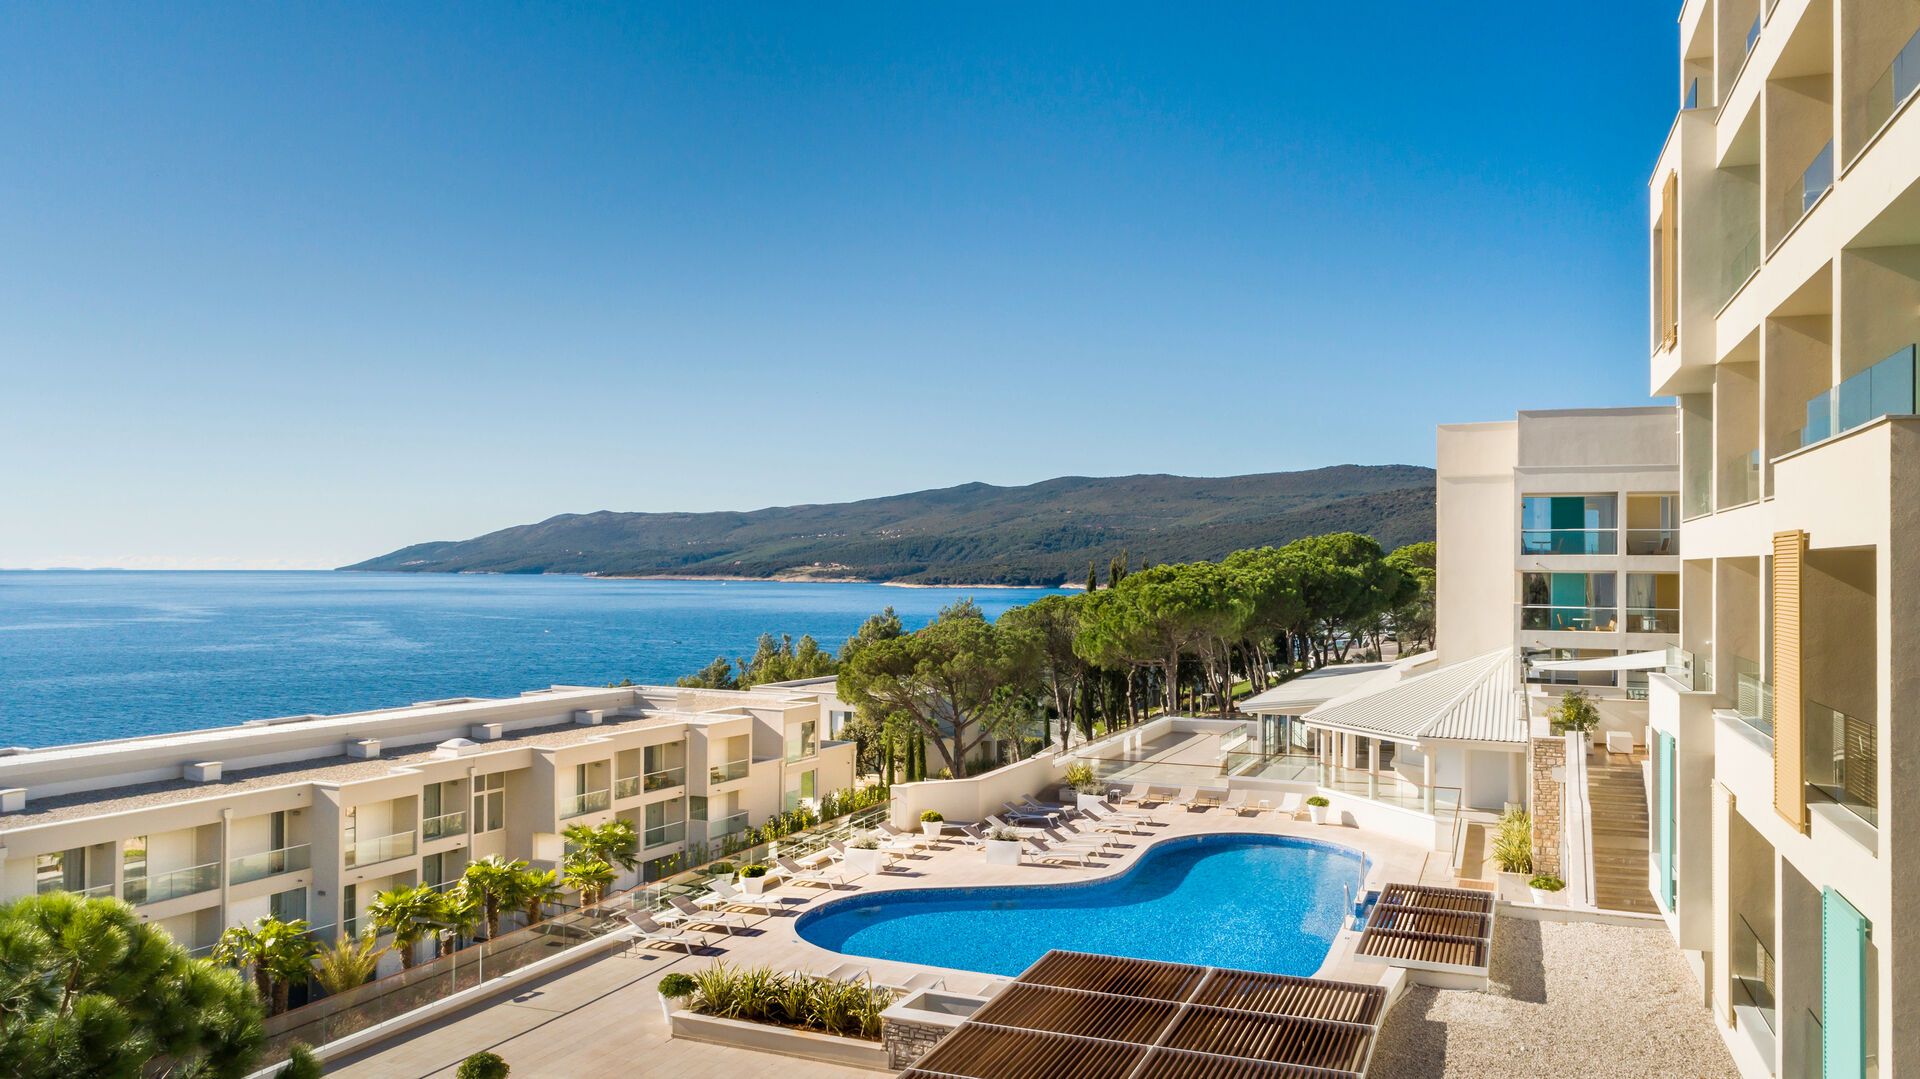 Croatie - Rabac - Hotel Valamar Bellevue Resort 4*